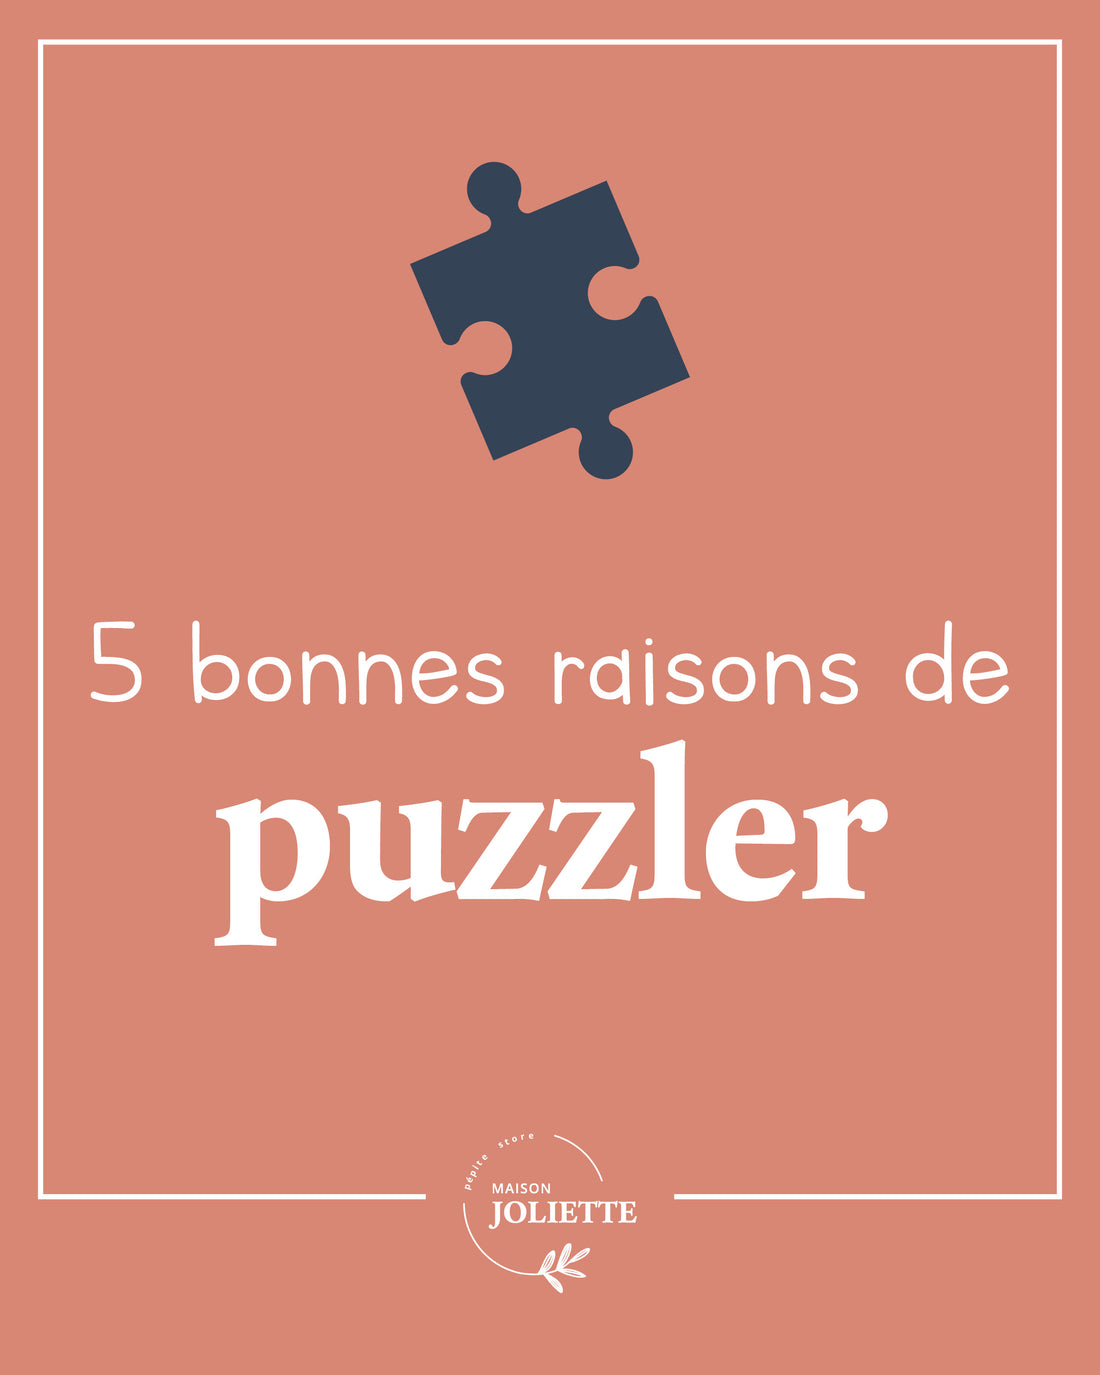 🧩 5 bonnes raisons de puzzler 🧩